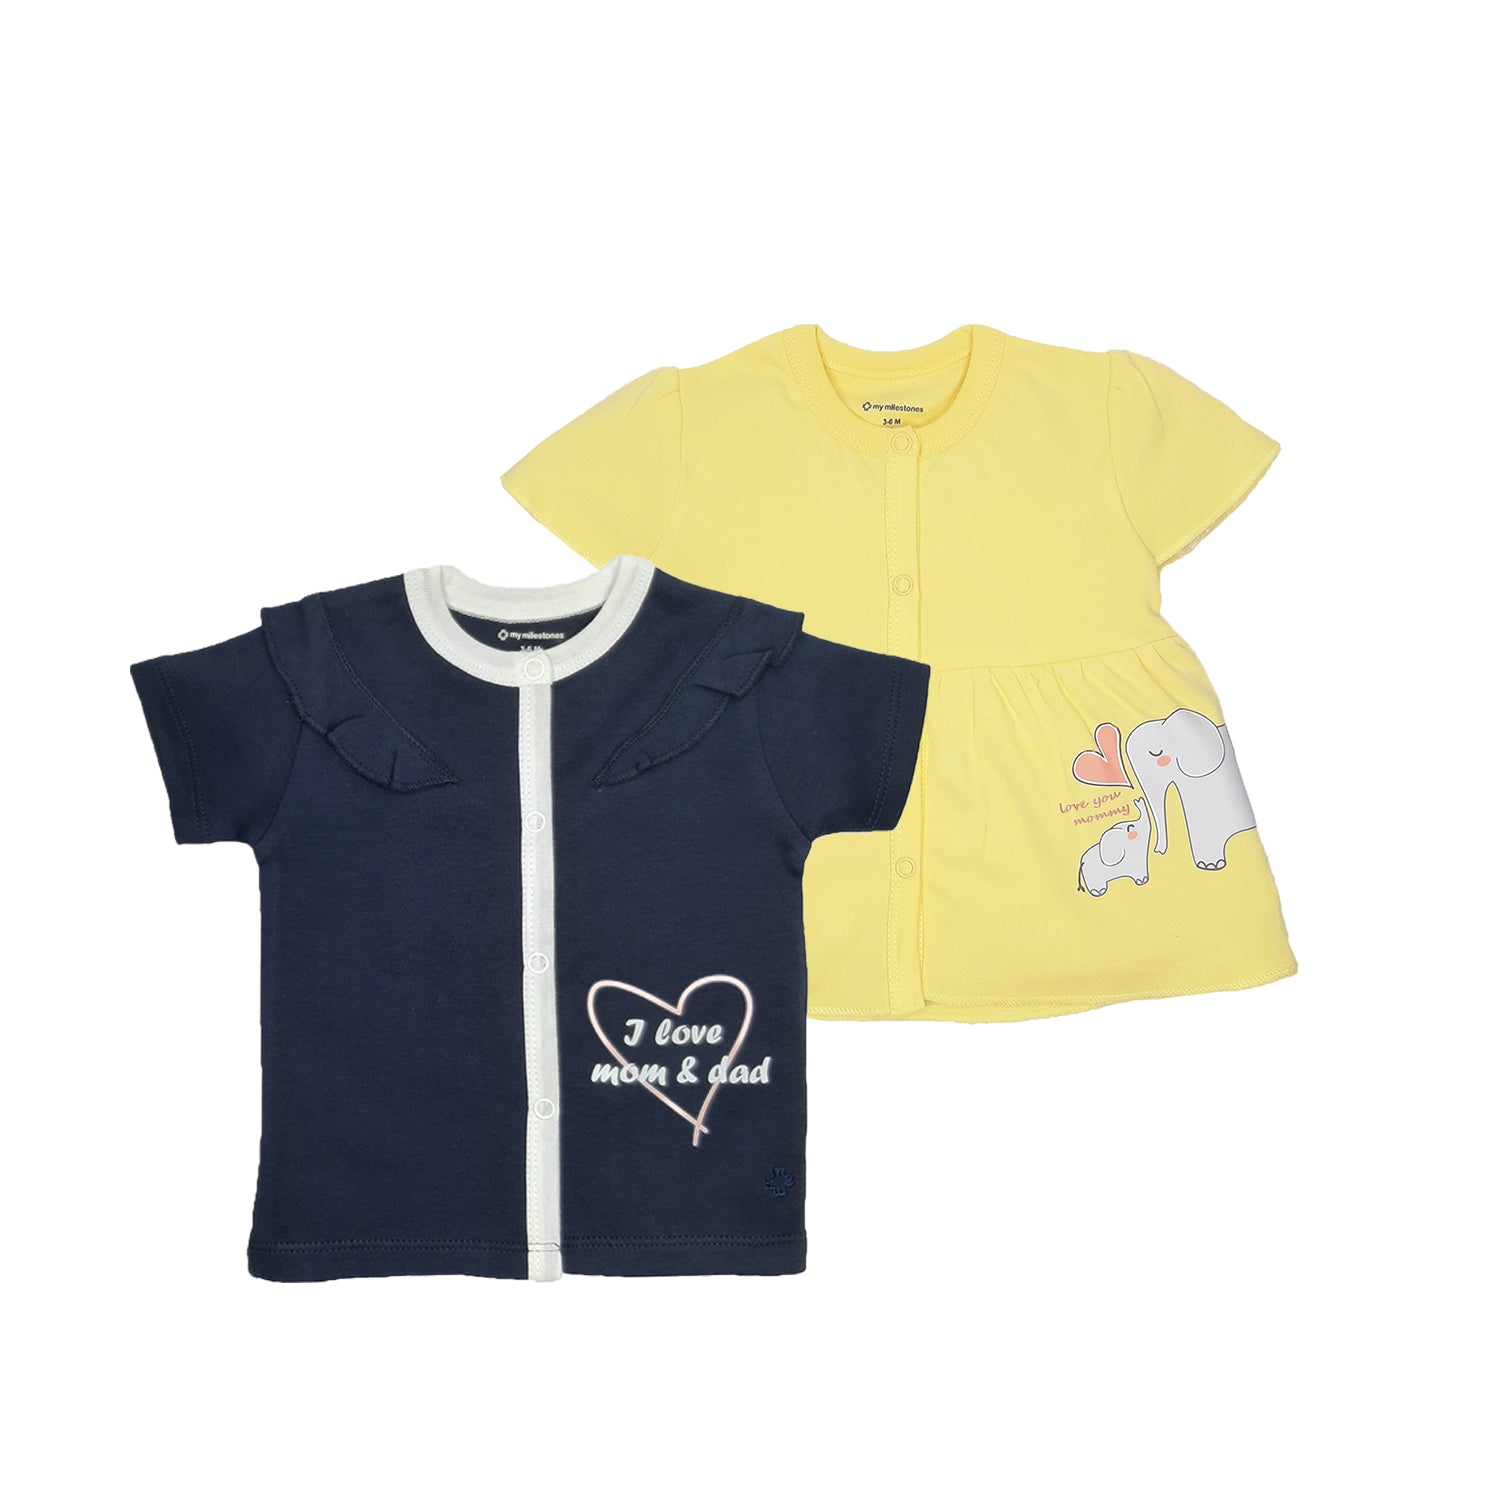 My Milestones T-shirt Half Sleeves Girls Yellow/ Navy Blue - 2 PC Pack